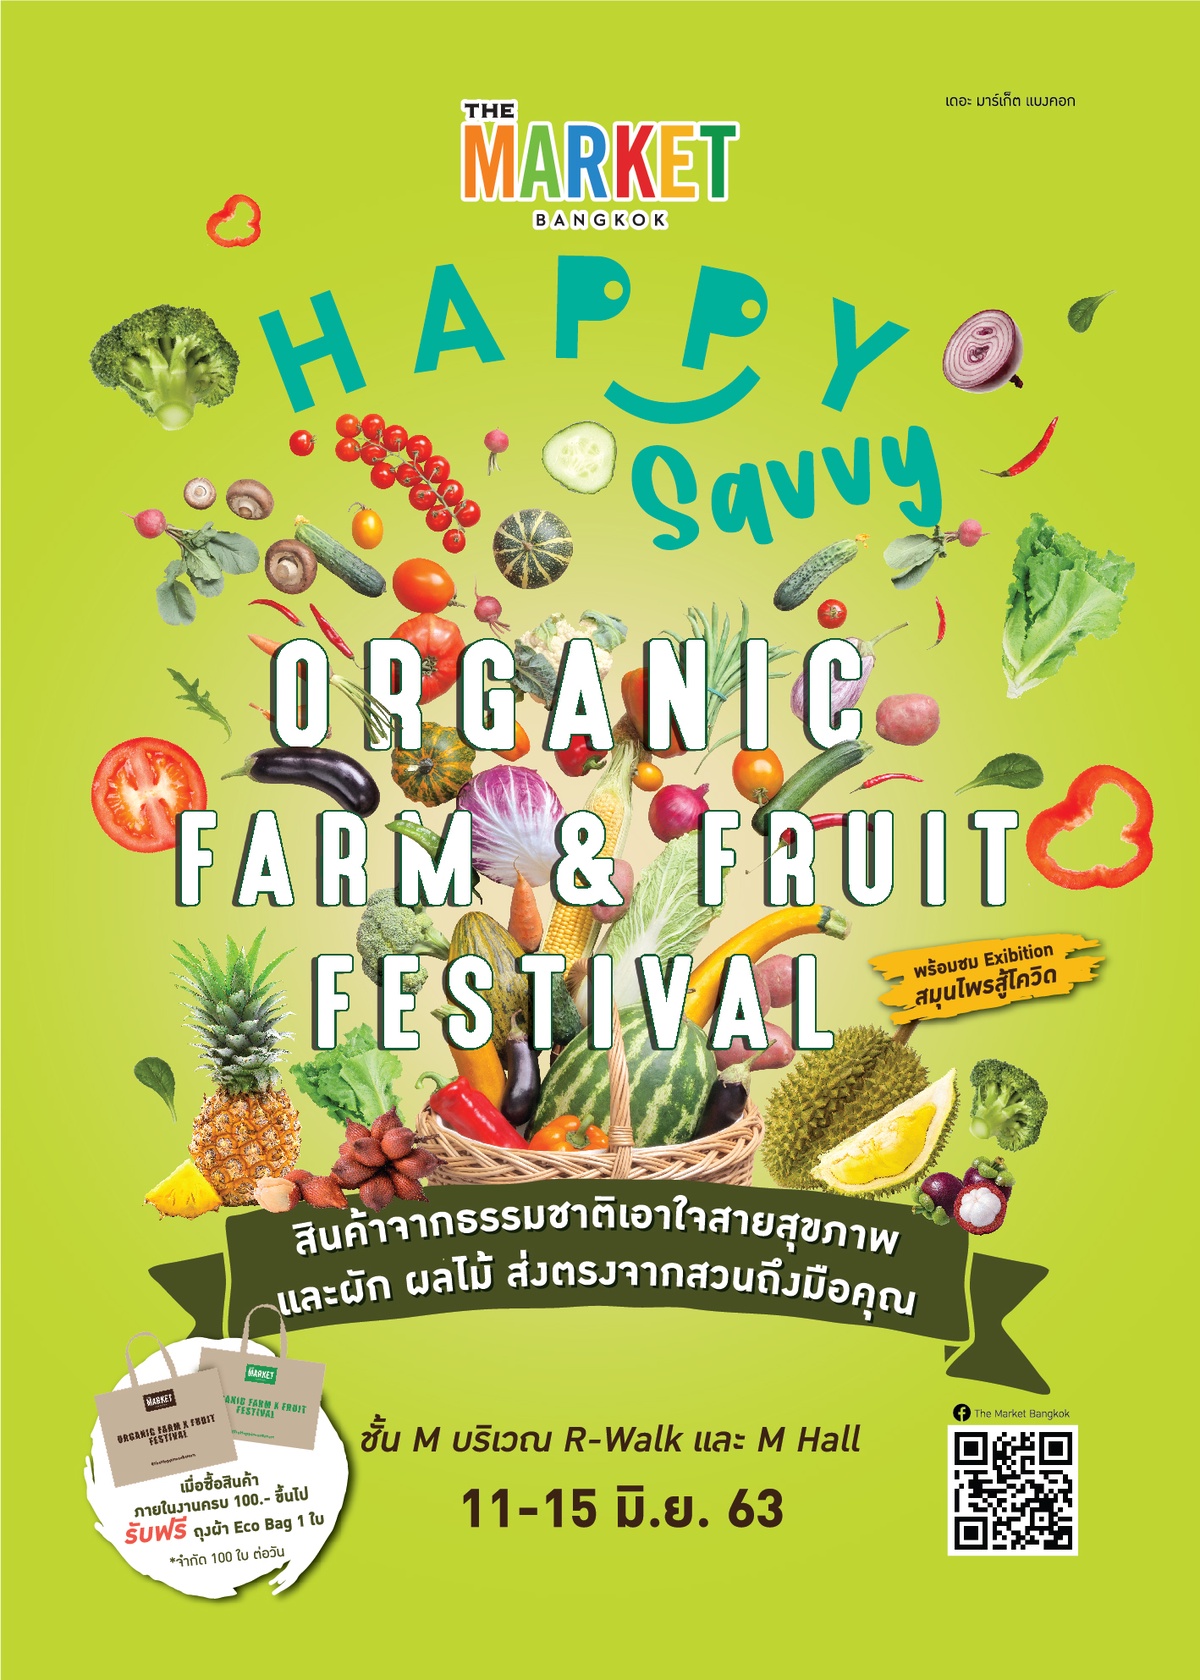 ศูนย์การค้า เดอะ มาร์เก็ต แบงคอก (ย่านราชประสงค์) จัดงาน Happy Savvy: Organic Farm Fruit Festival วันที่ 11 15 มิถุนายน